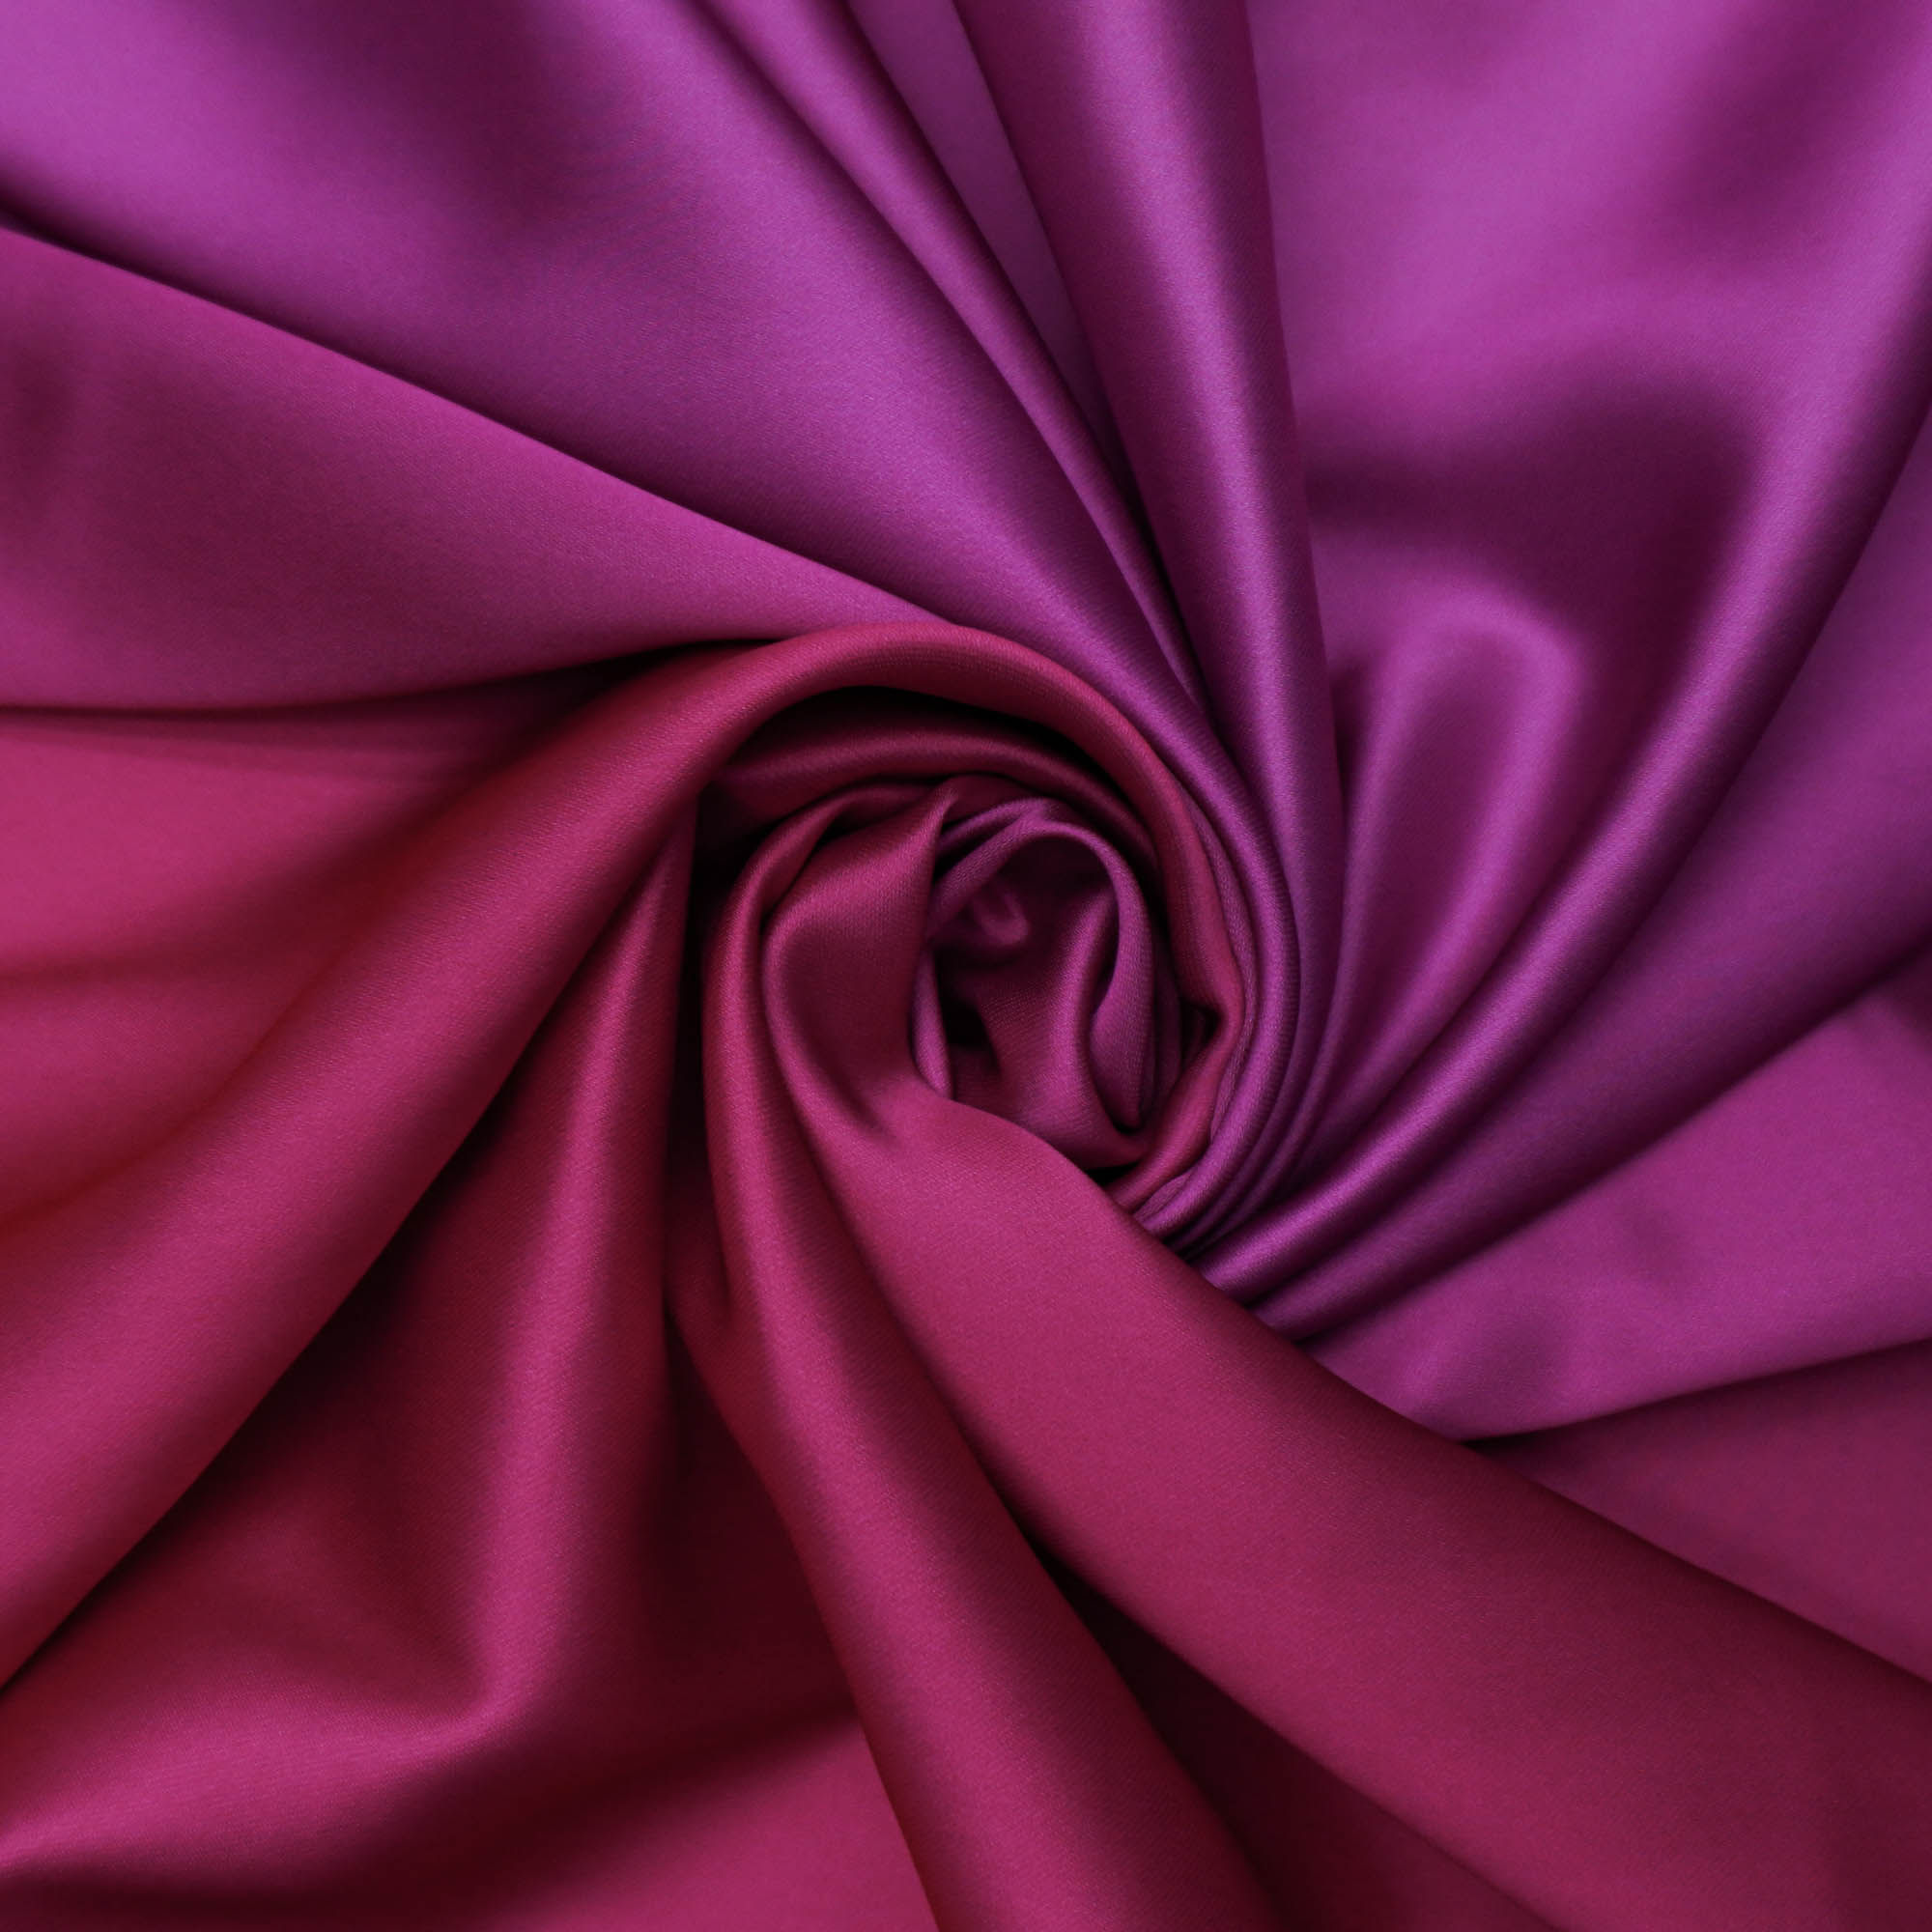 Tecido crepe acetinado com elastano degradê pink/fúcsia/rosa (tecido italiano legítimo)